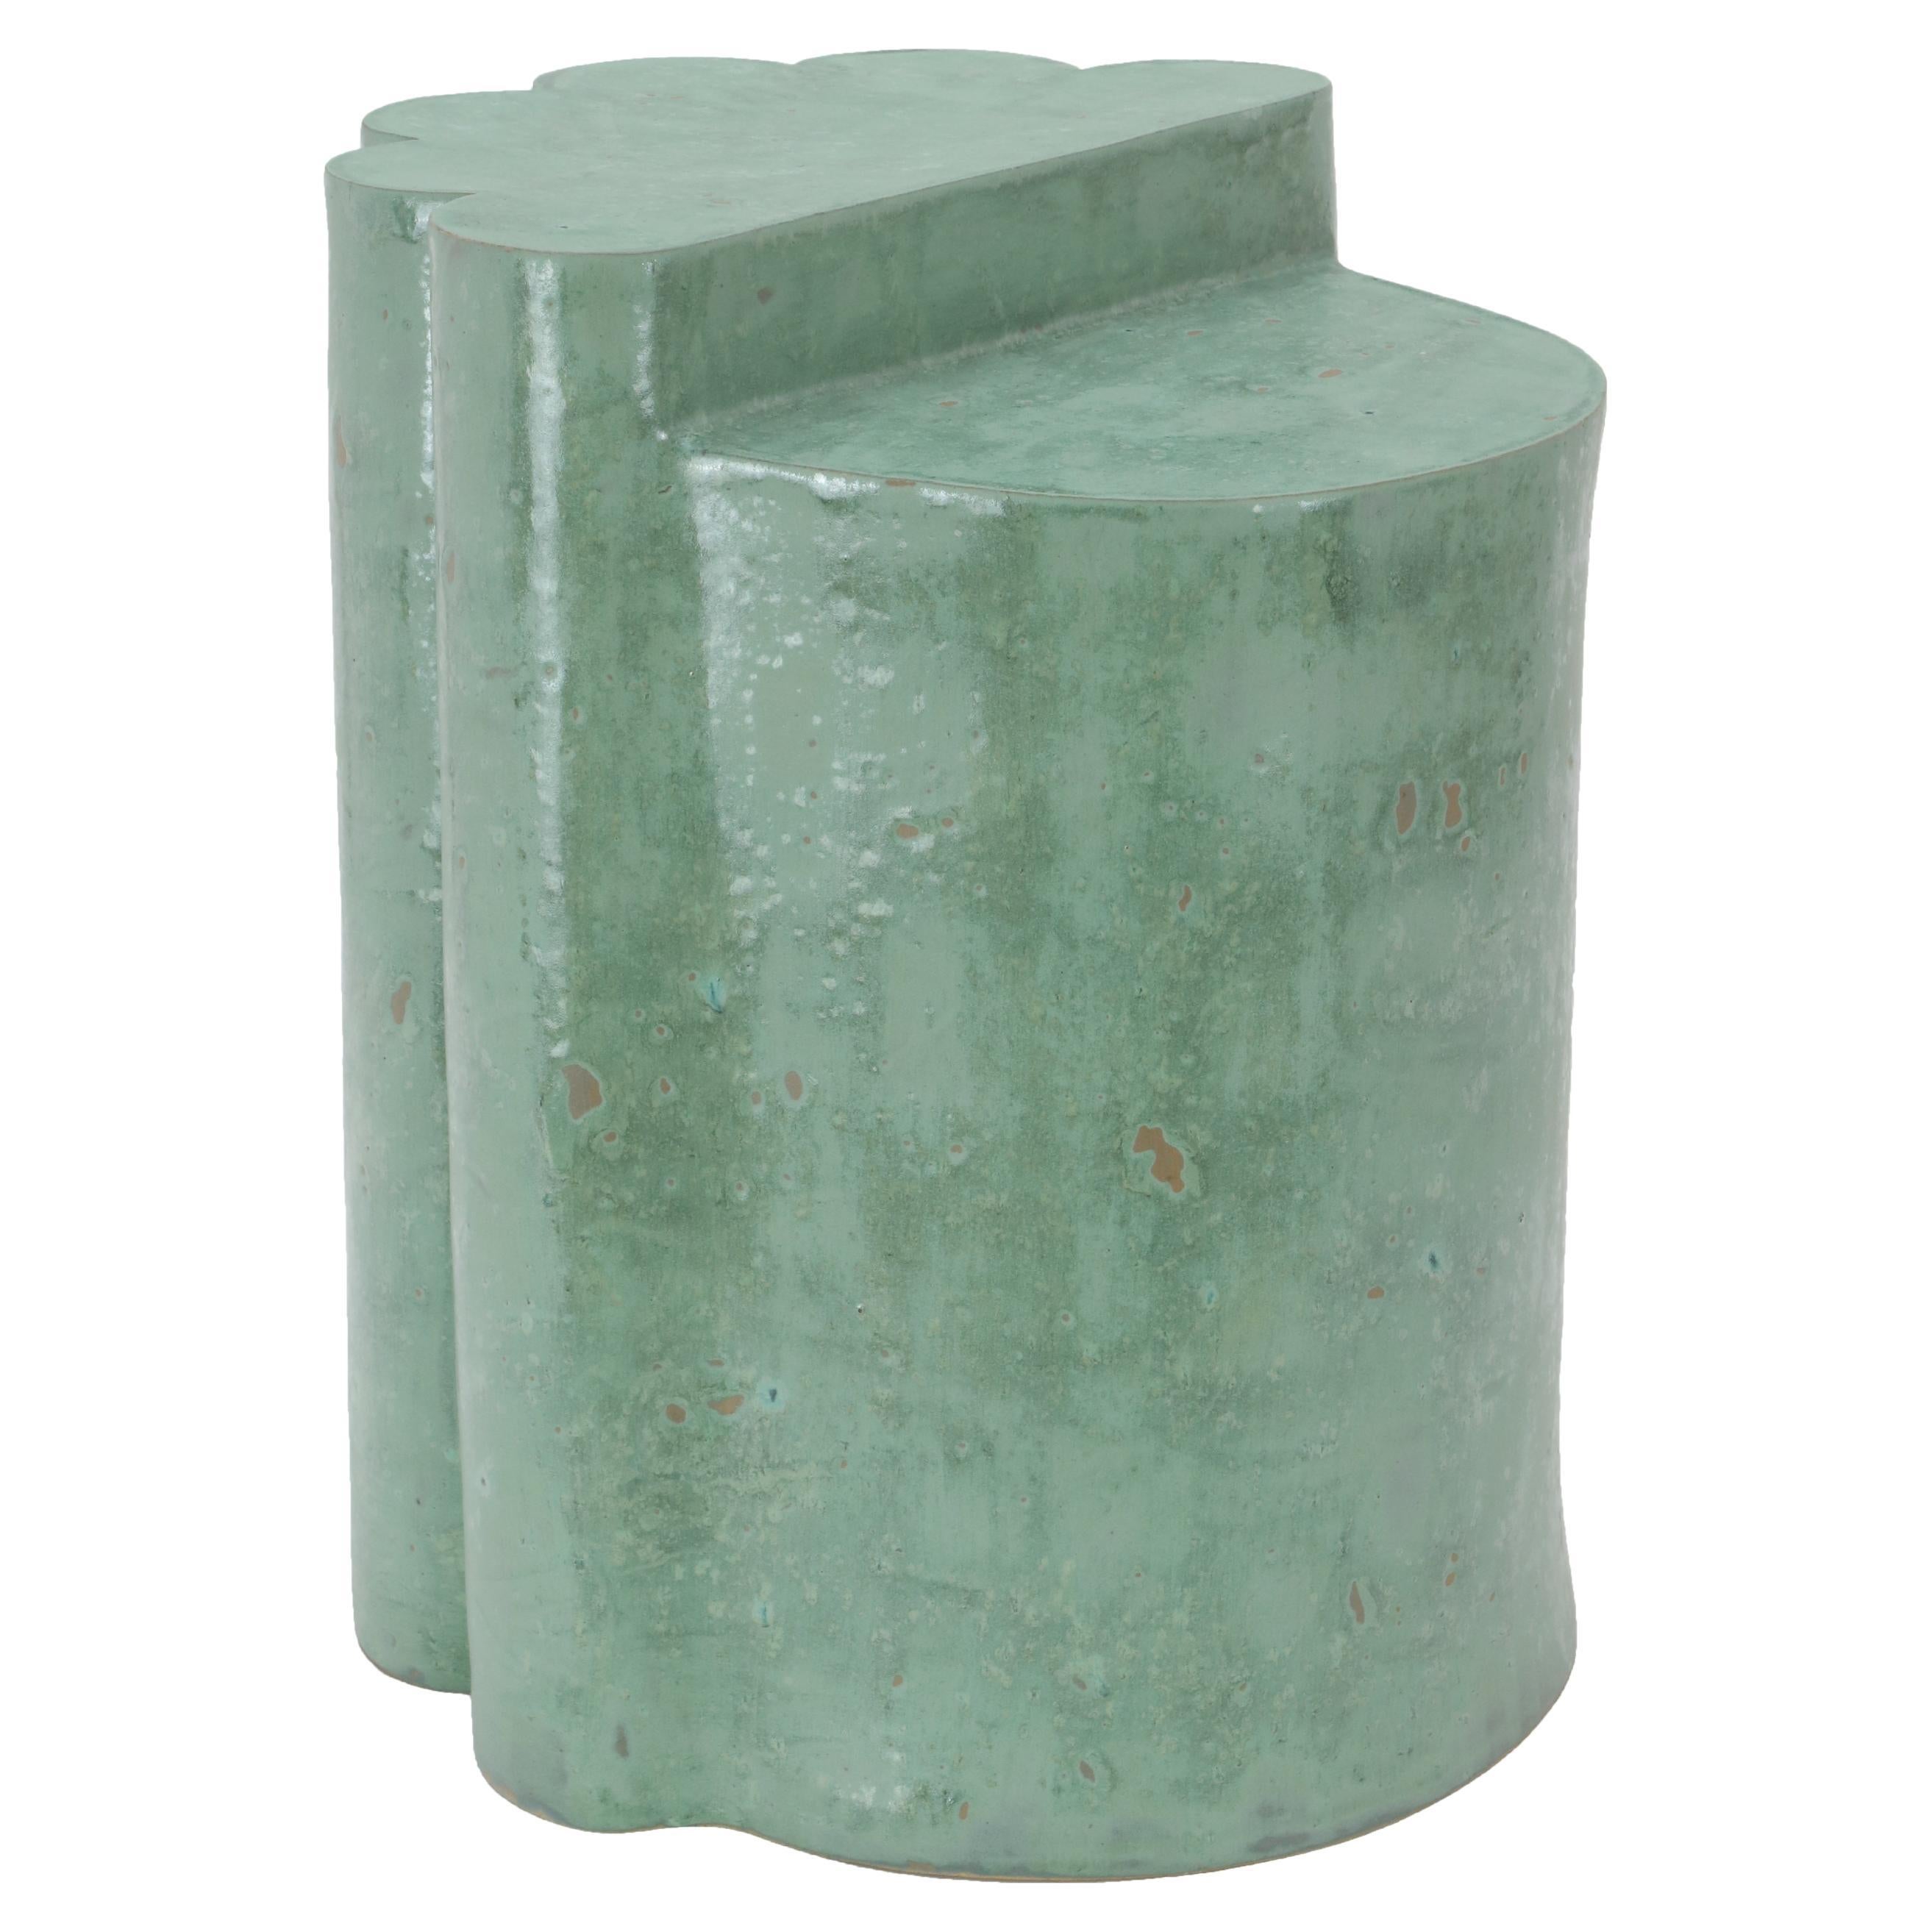 Ceramic Ledge Side Table & Stool in Jade by BZIPPY